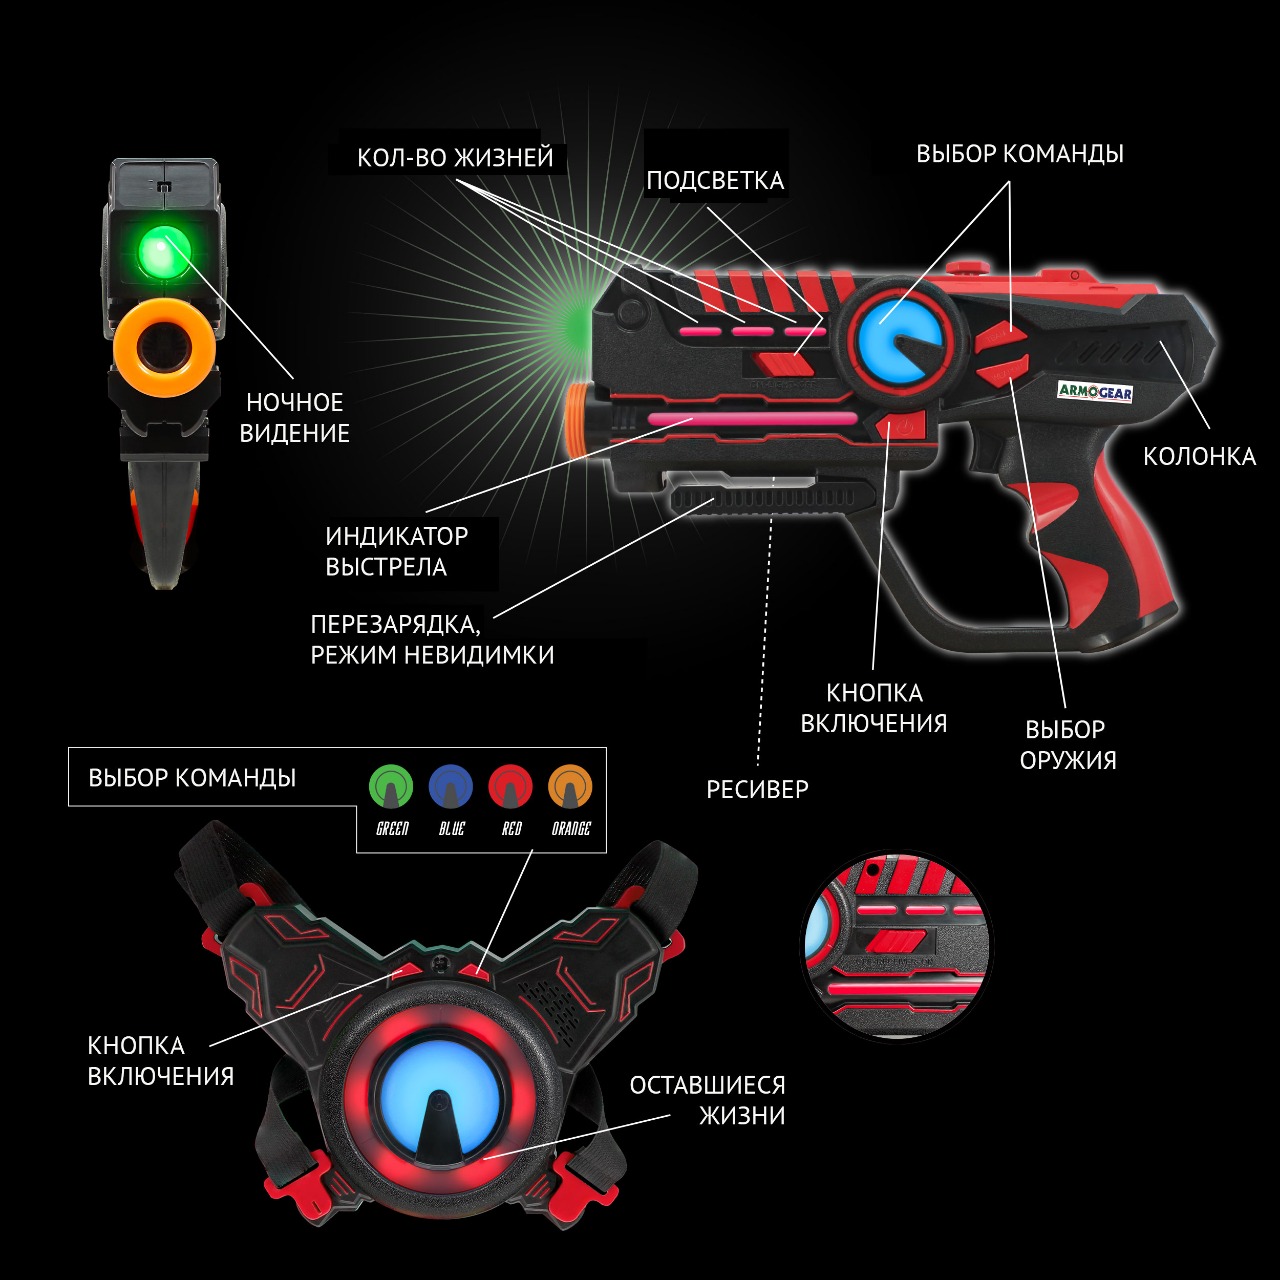 Игровой набор Лазертаг ArmoGear для 4-х игроков 